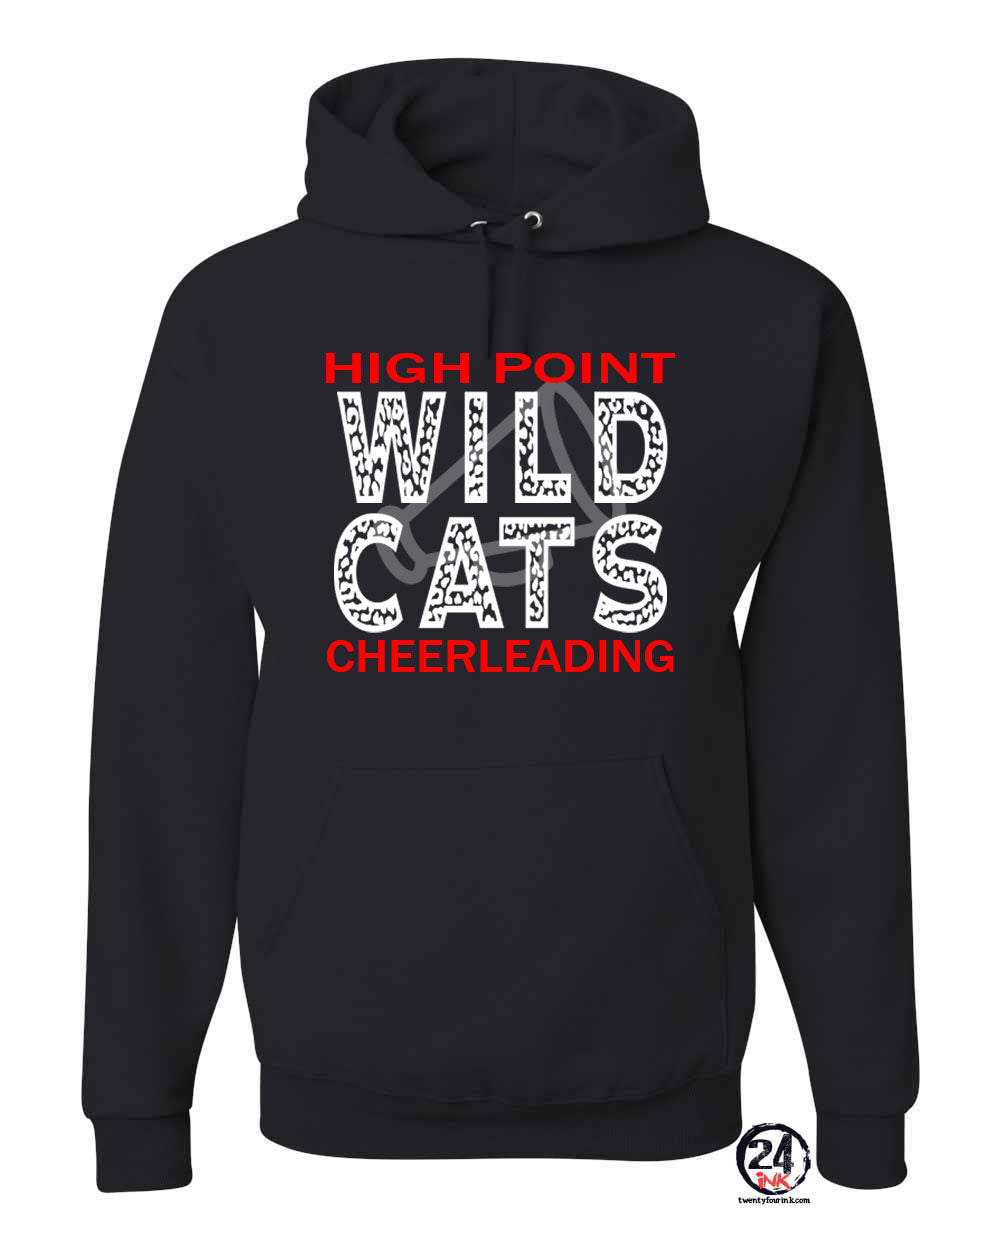 Wildcats cheer Design 1 Hooded Sweatshirt